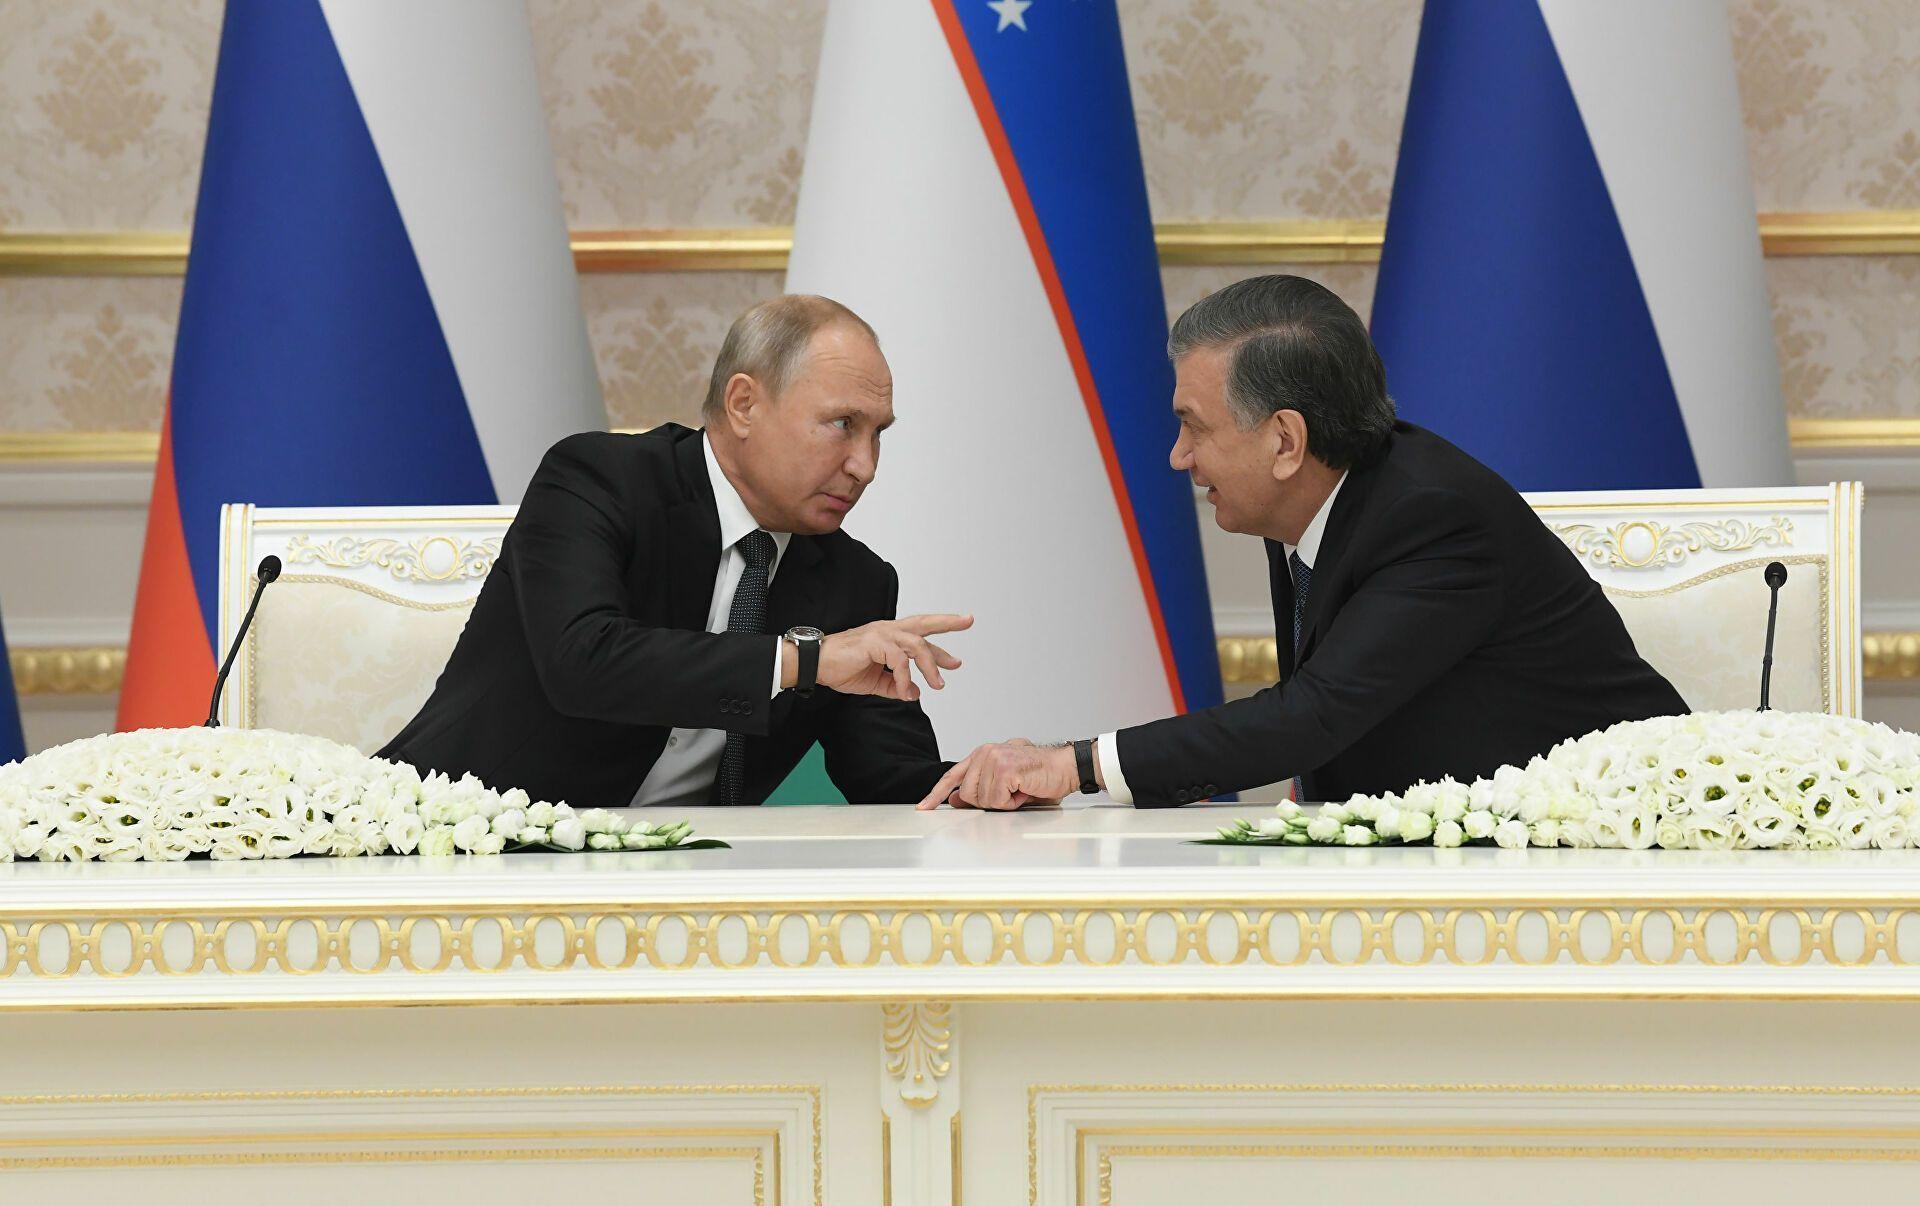 Узбекистан сближается с Евразийским союзом: итоги визита Мирзиёева в Москву